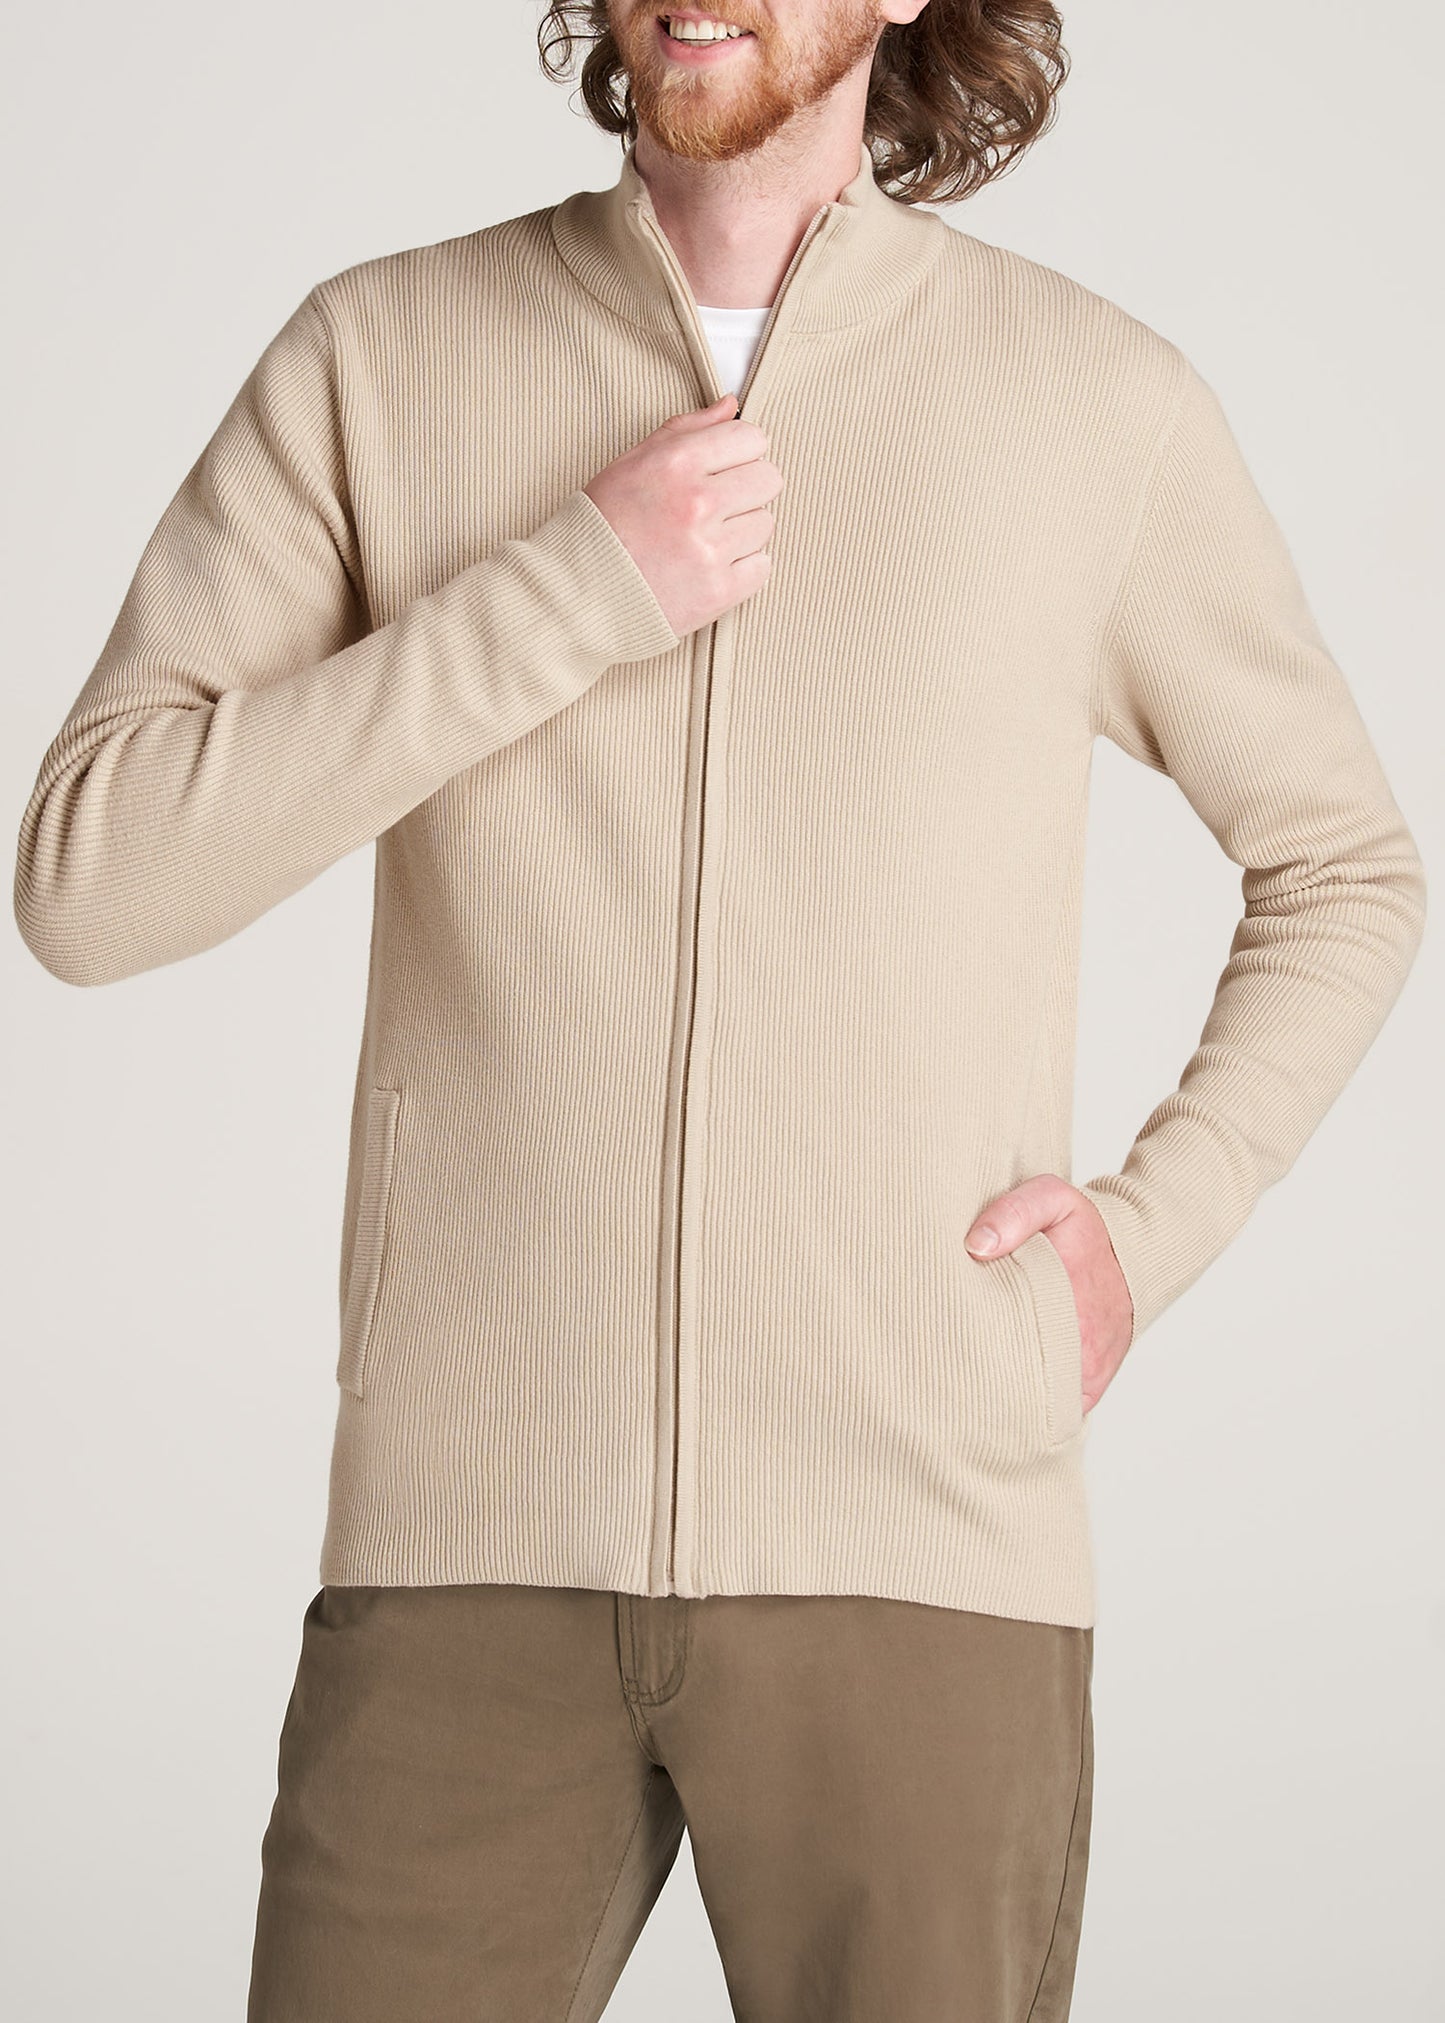 American-Tall-Men-FullZip-Sweater-BeigeMix-zipped